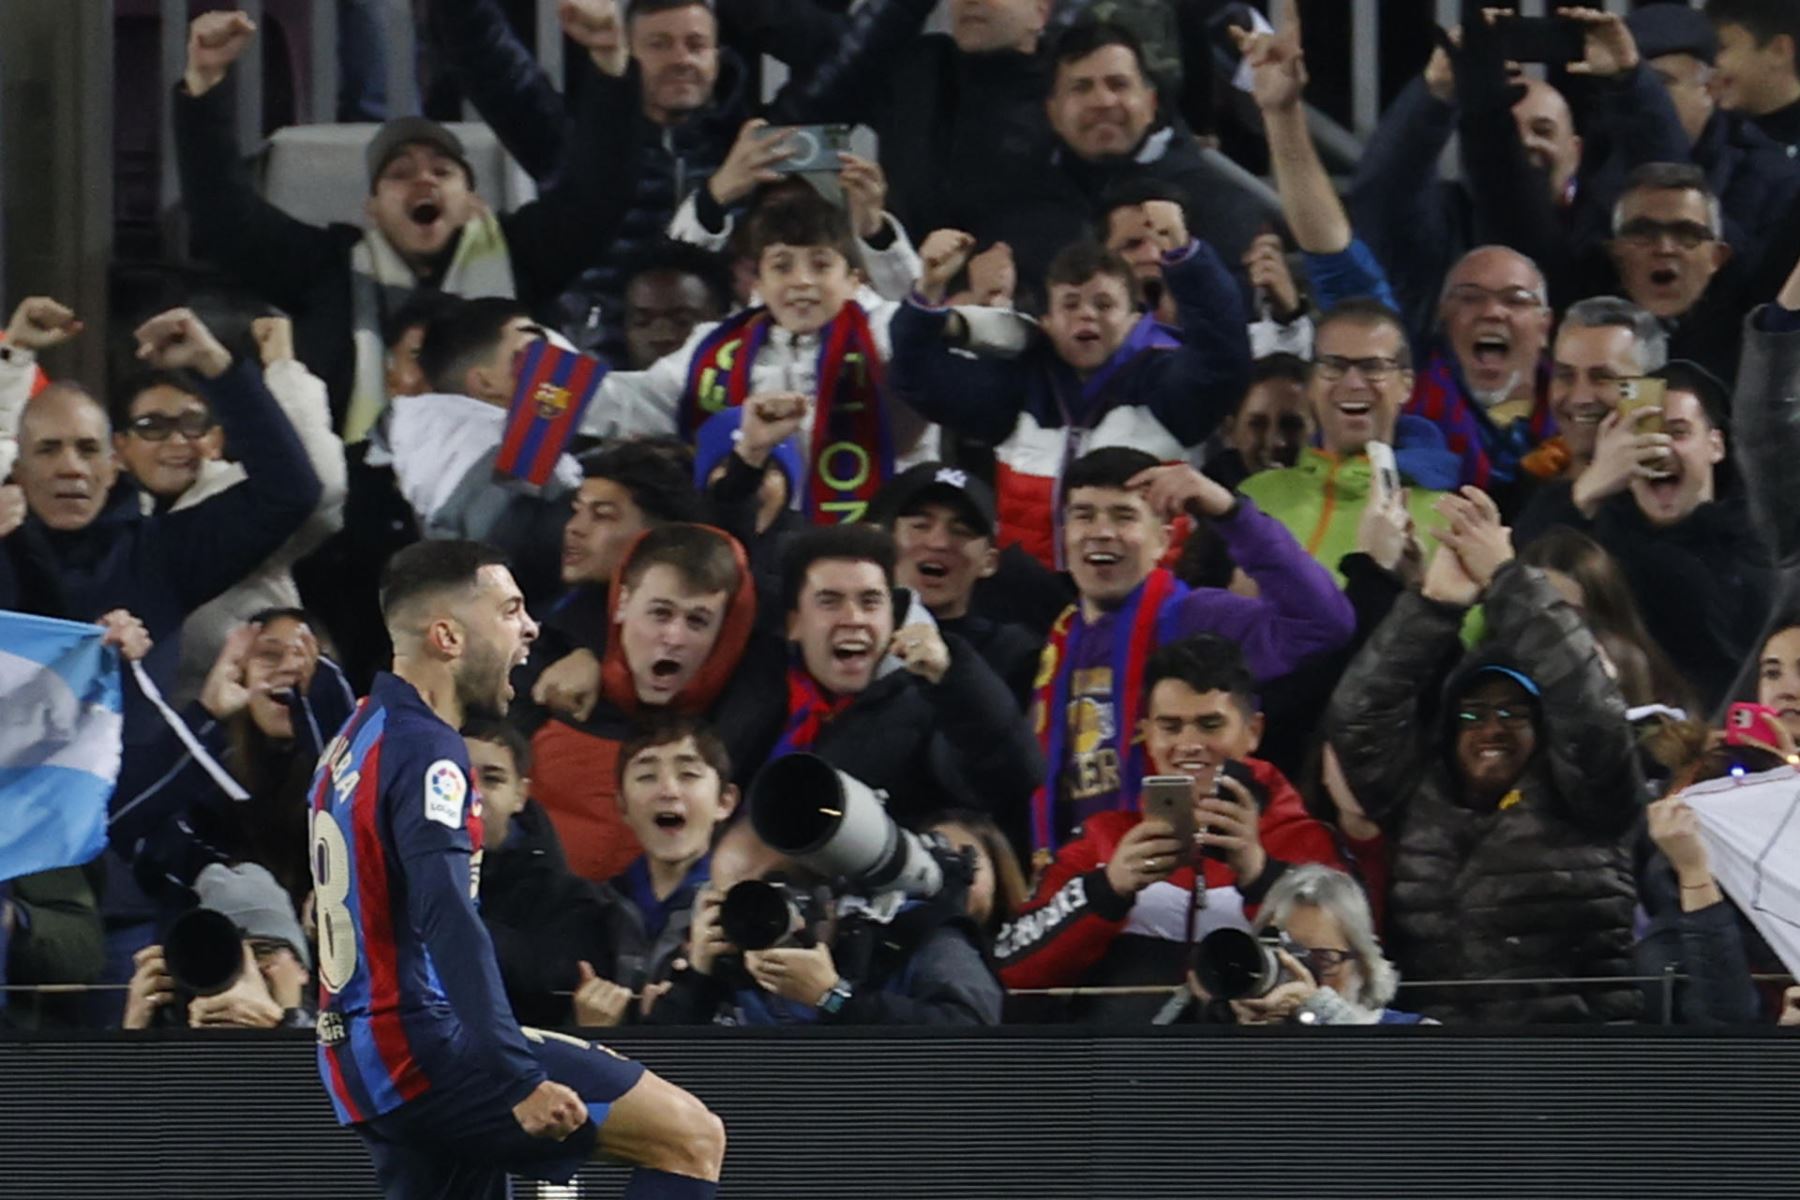 El defensa del FC Barcelona Jordi Alba celebra su gol en el partido de la jornada 20 de LaLiga que FC Barcelona y Sevilla FC disputan hoy domingo en el Camp Nou.

Foto: EFE